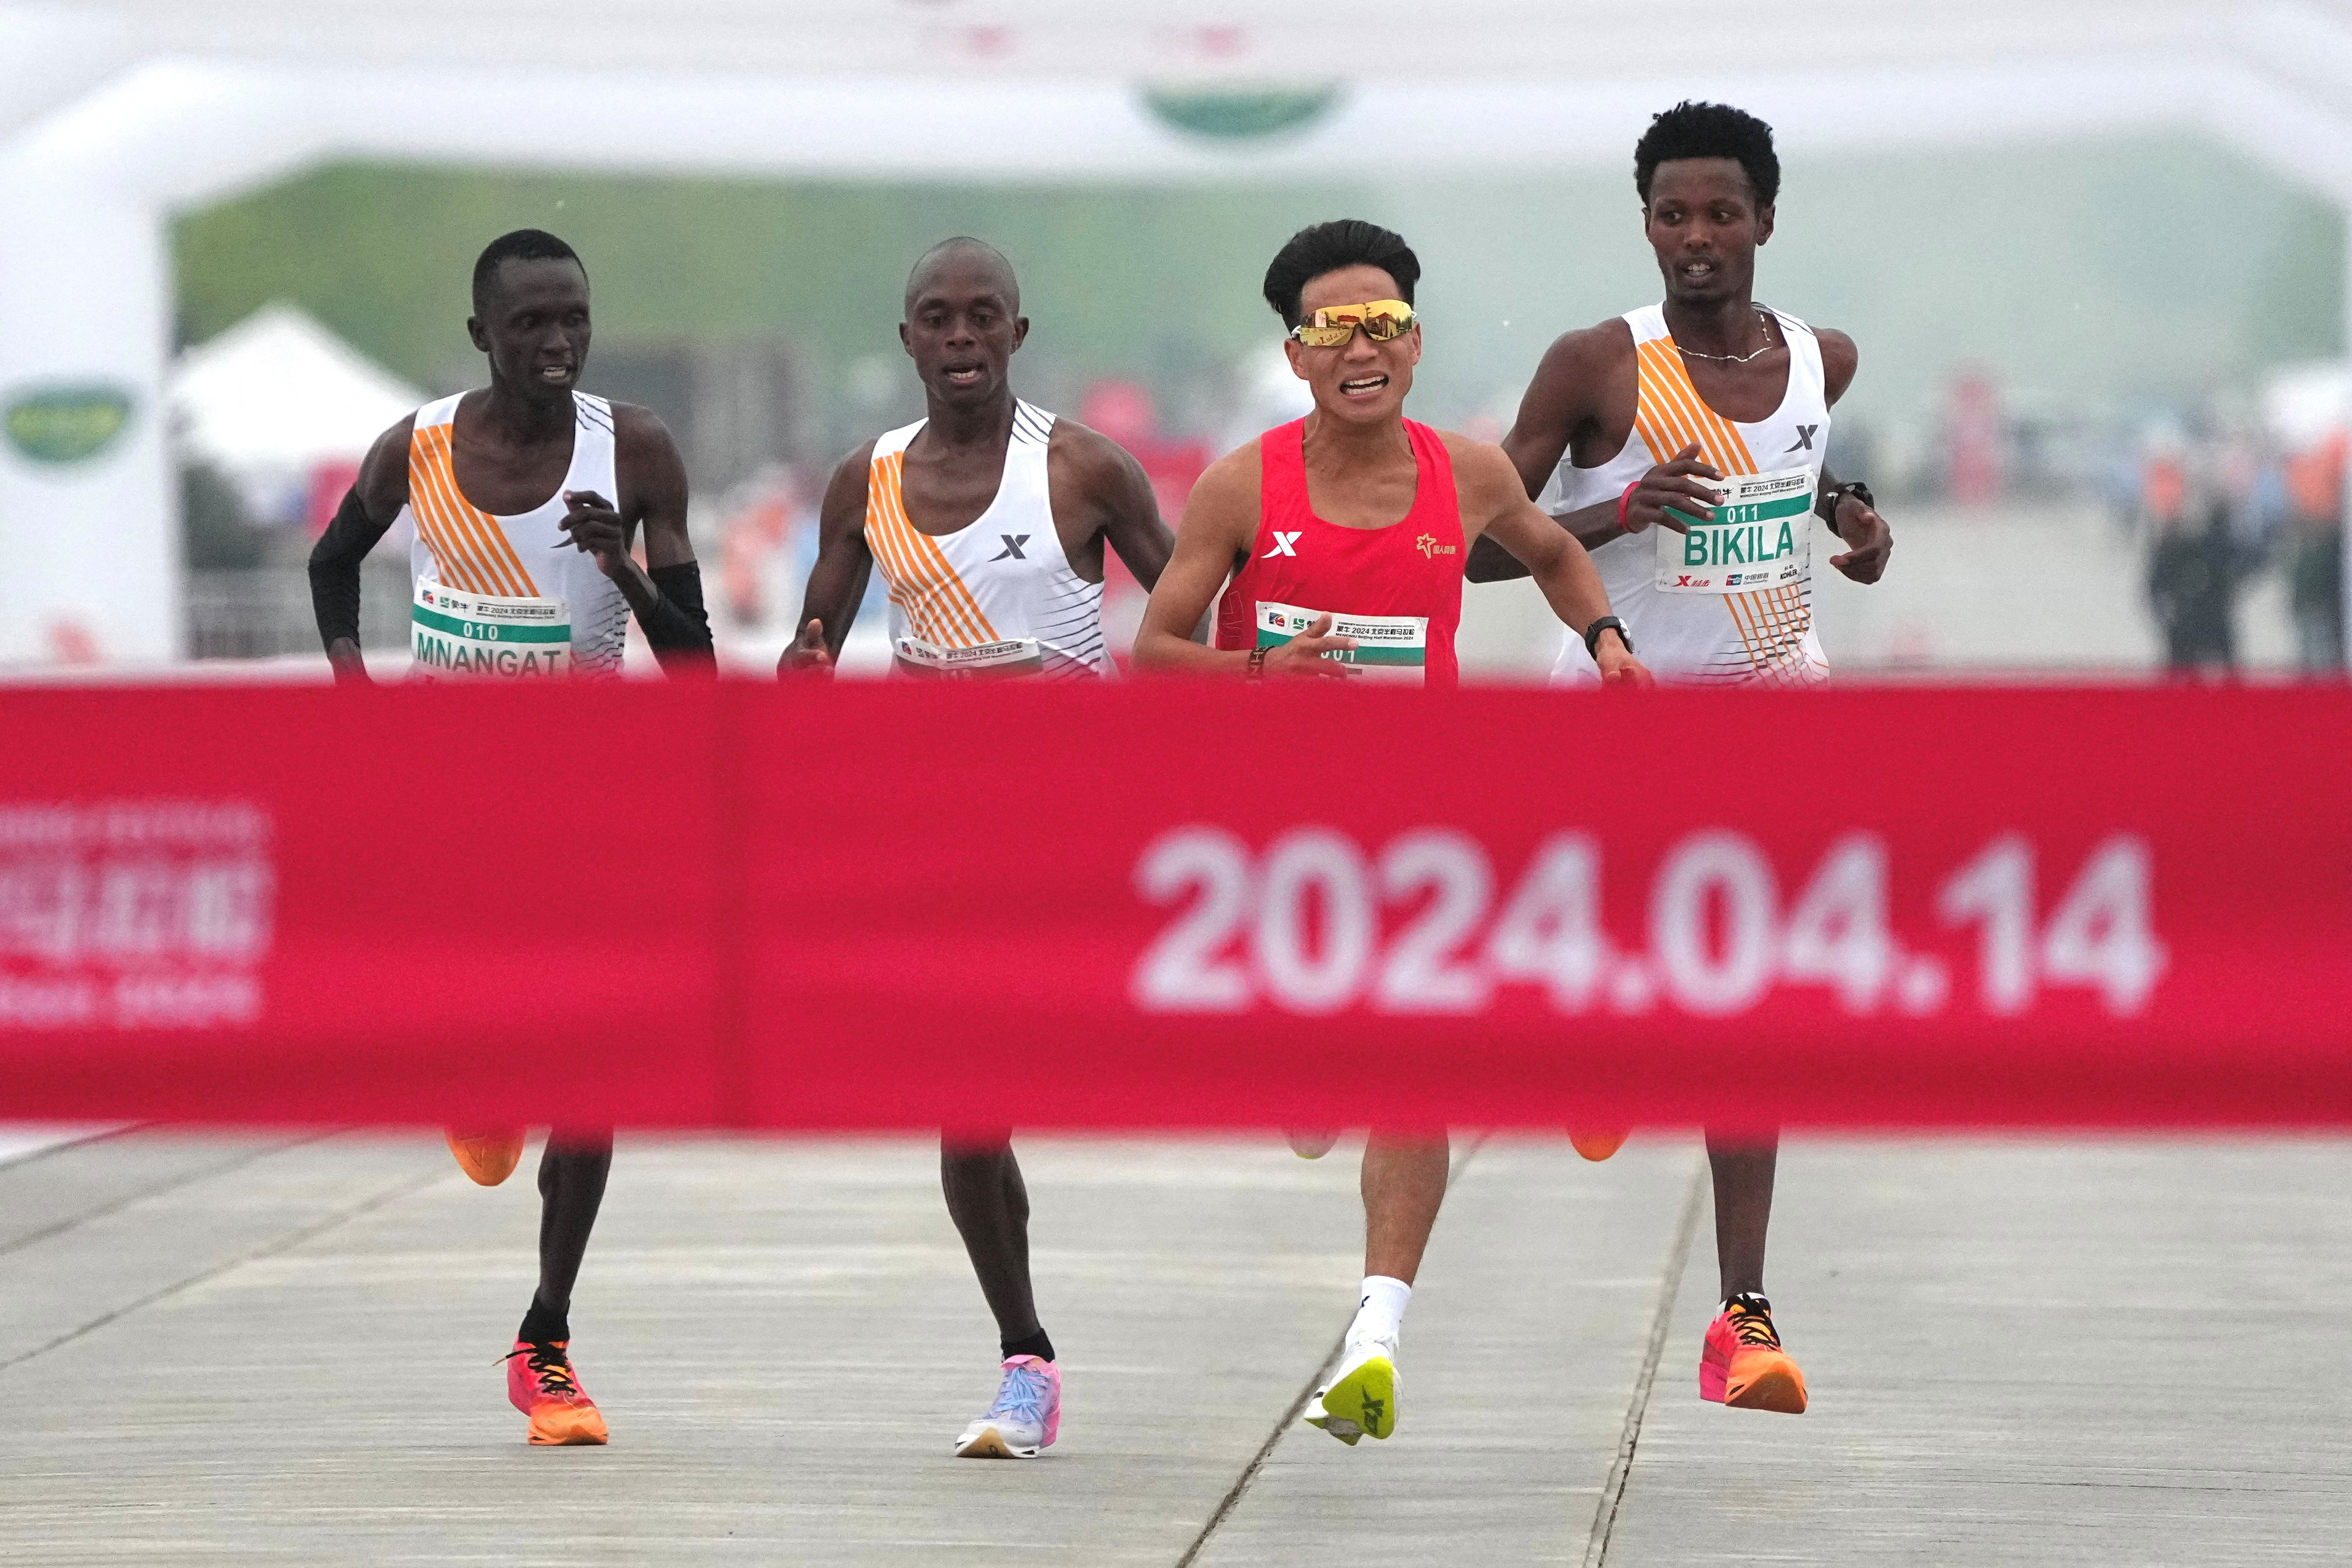 北京14日举行半程马拉松爆出跑假赛争议，3名领先非洲选手最后关头疑似护送何杰（右二）率先冲线，遭网友讽刺半马变「伴马」，事后一名非洲选手受访自招只是陪跑员。路透